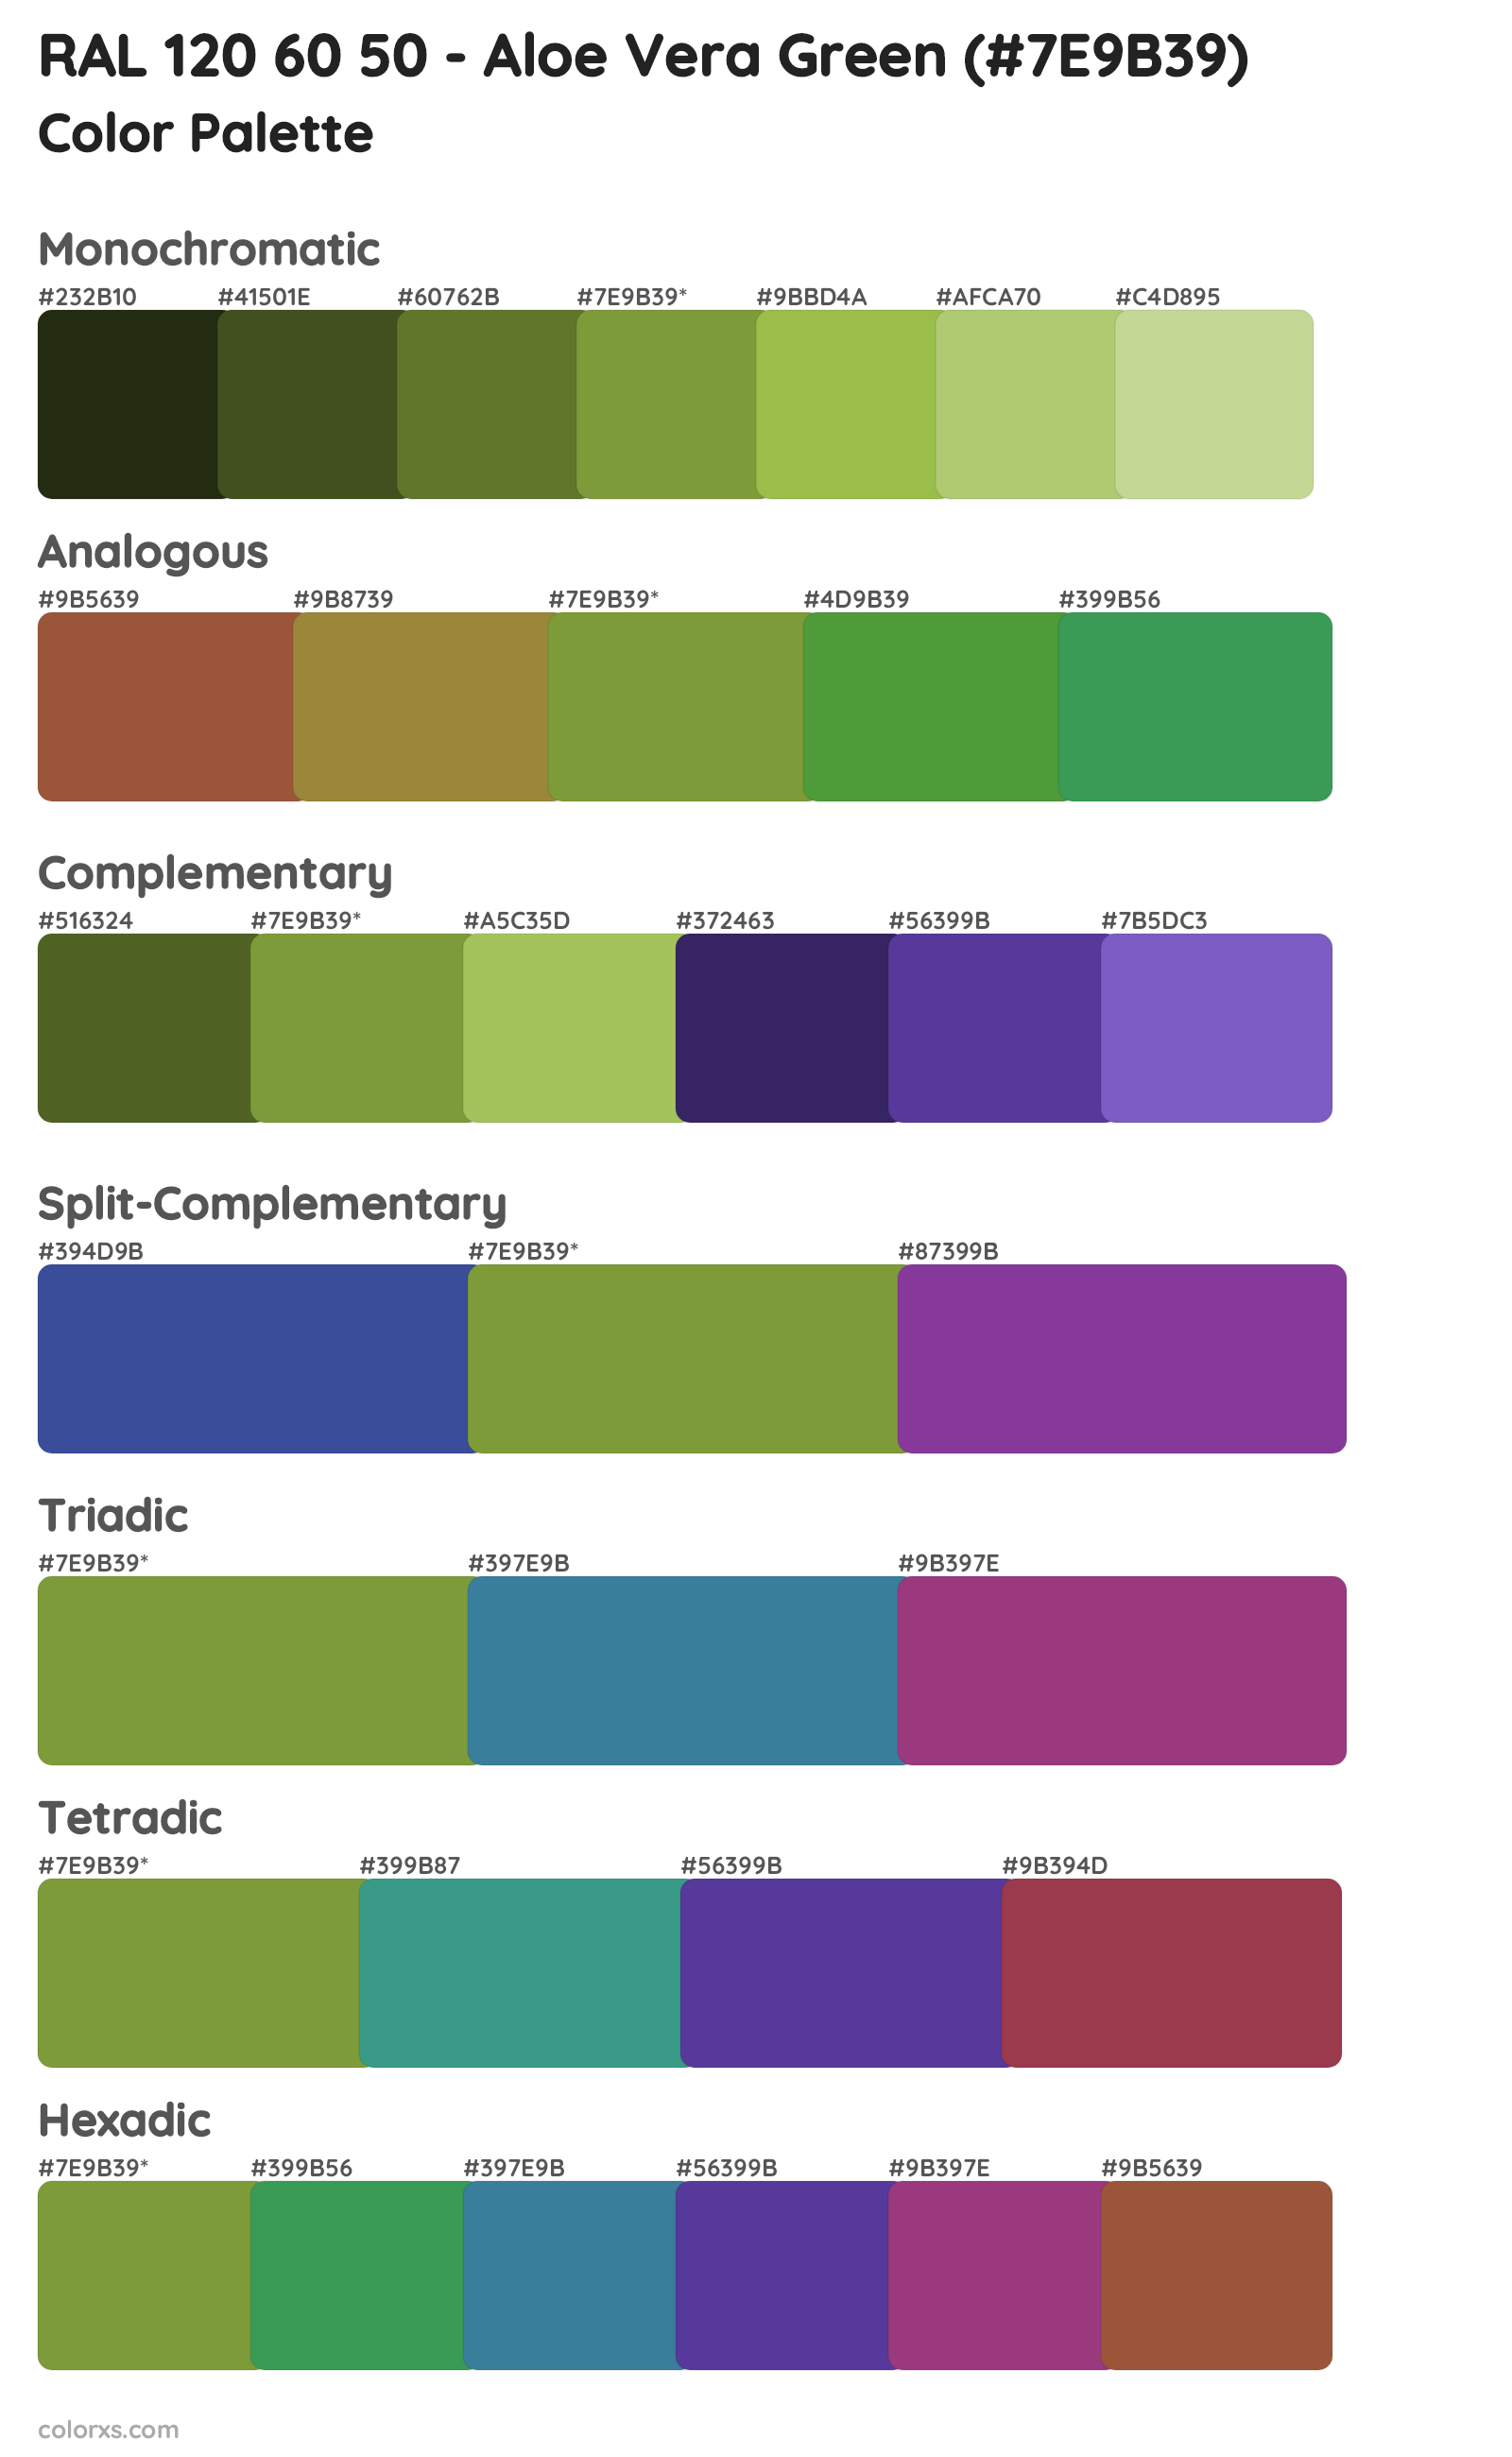 RAL 120 60 50 - Aloe Vera Green Color Scheme Palettes